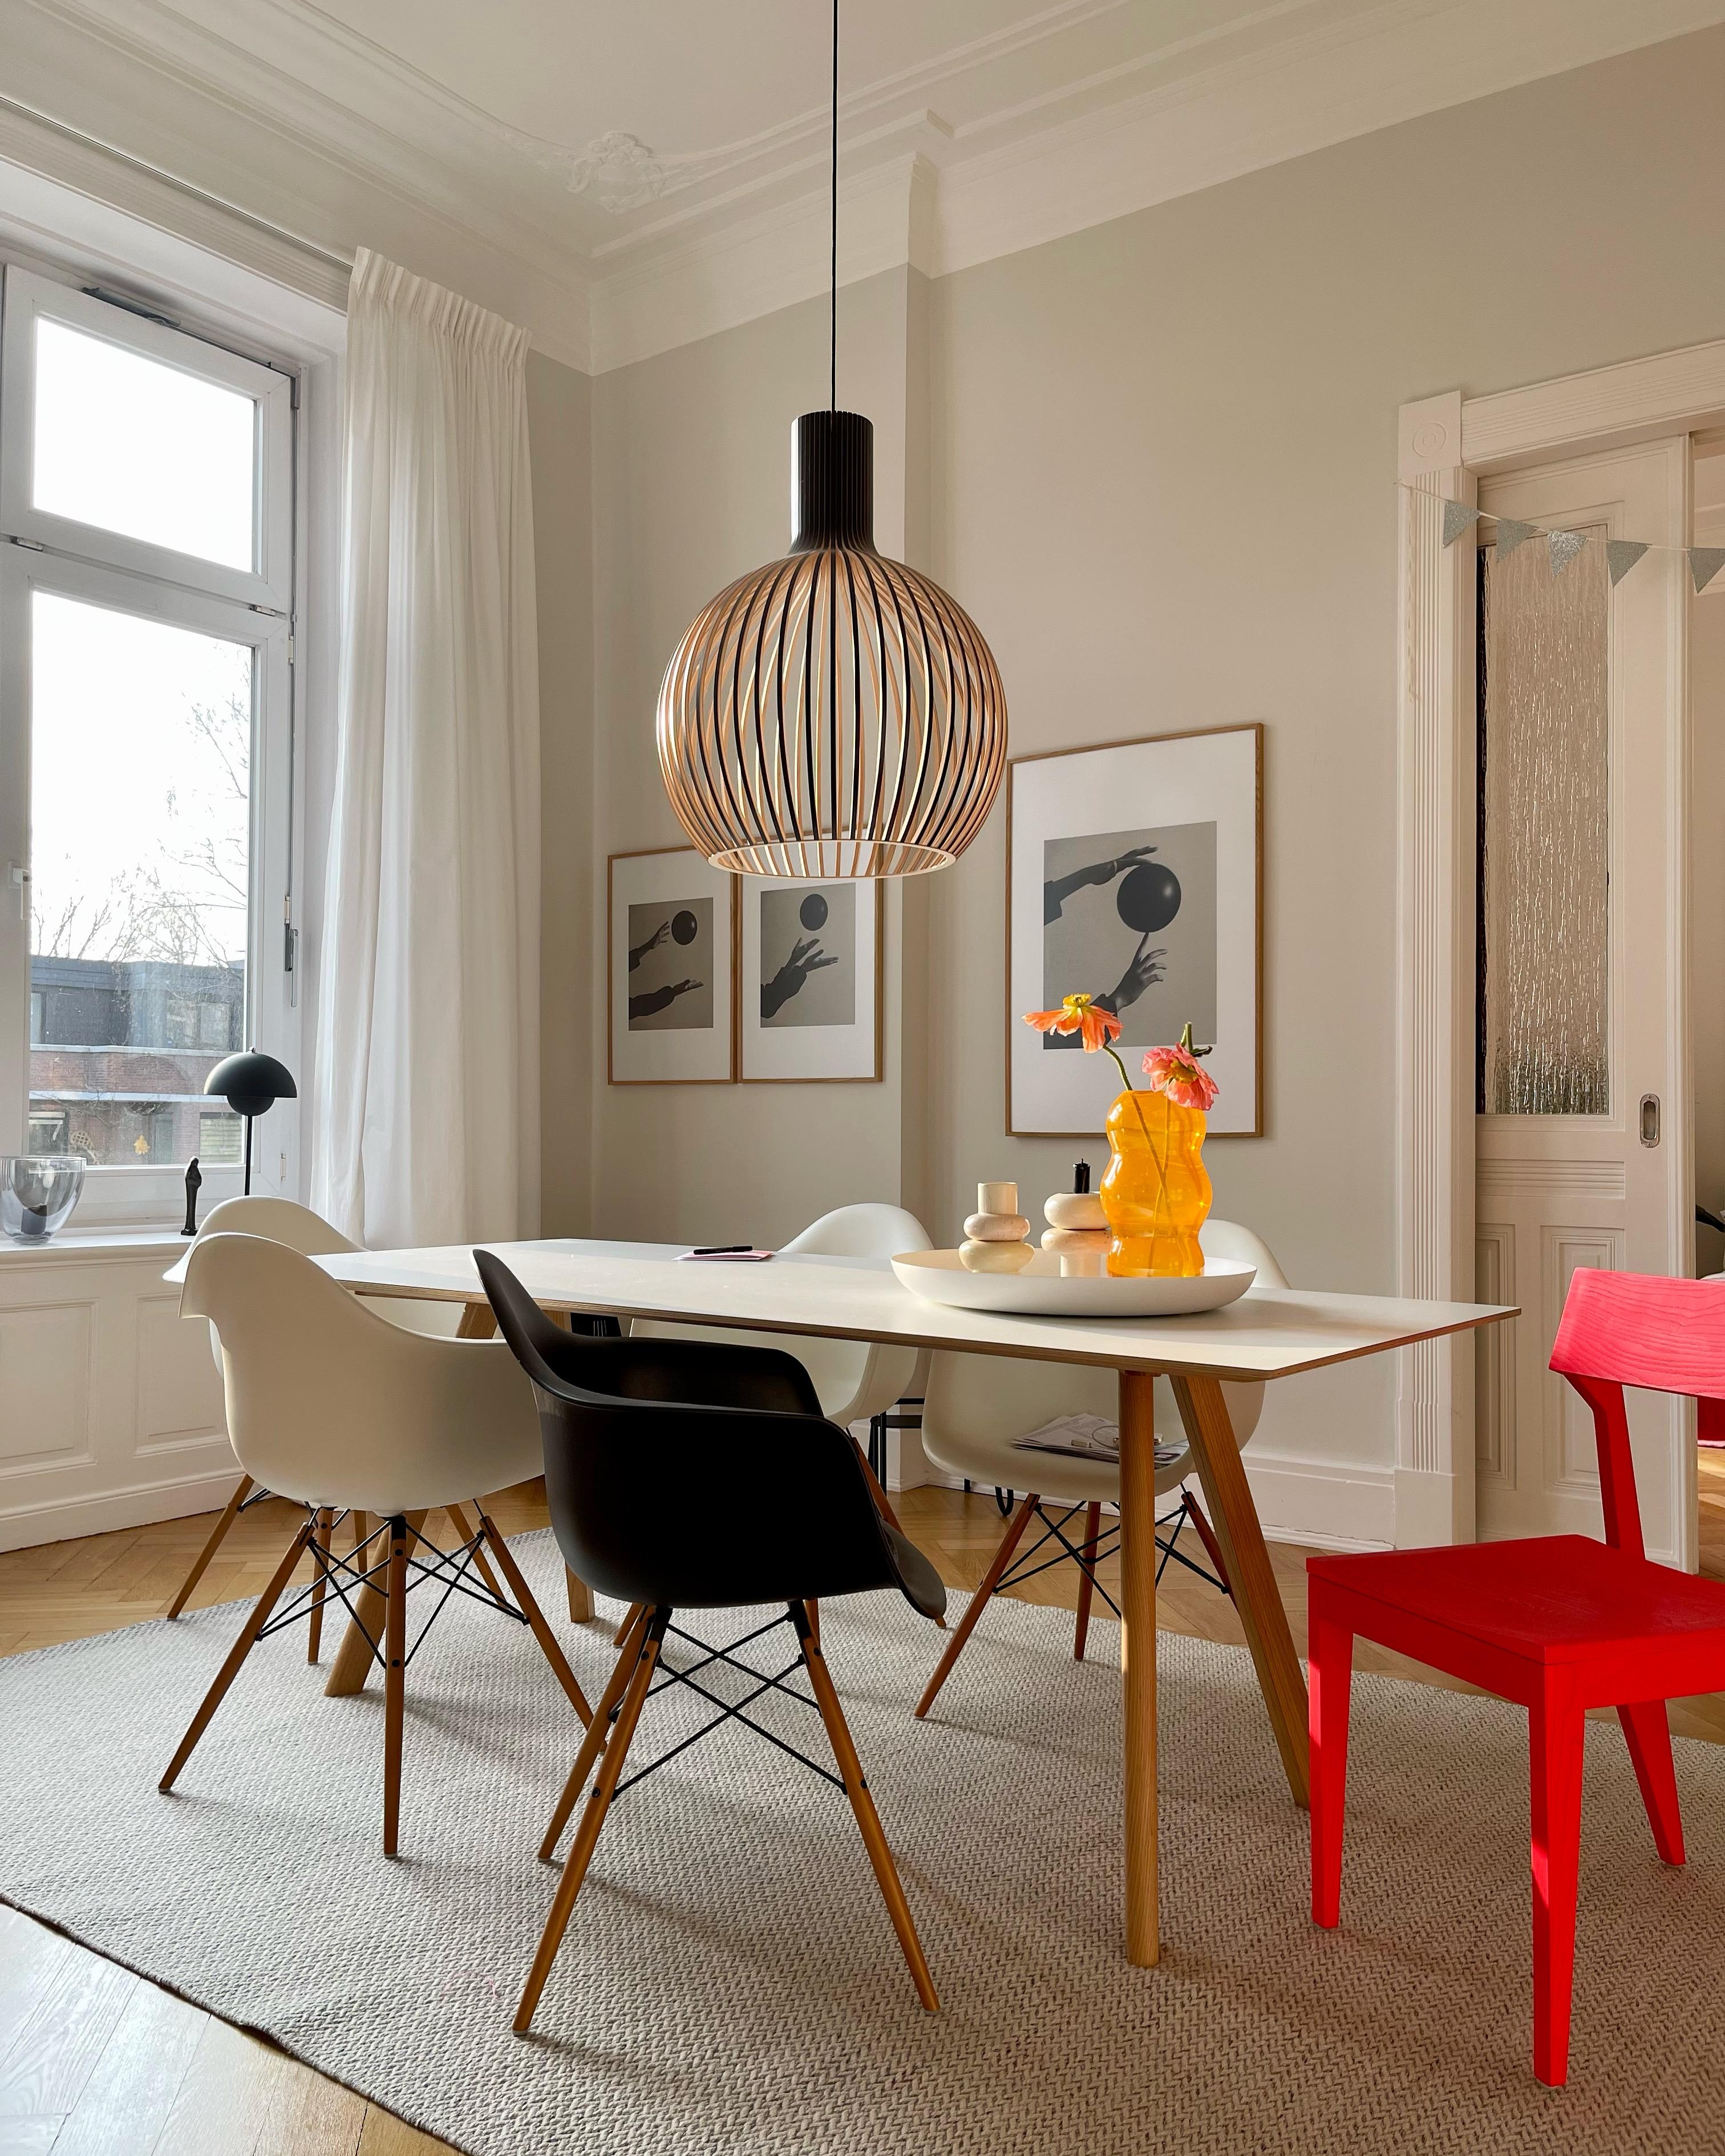 Neue Bilder sind eingezogen! #esszimmer #livingroom #art #bilder #wohnen #living #couchstyle #colorfulliving